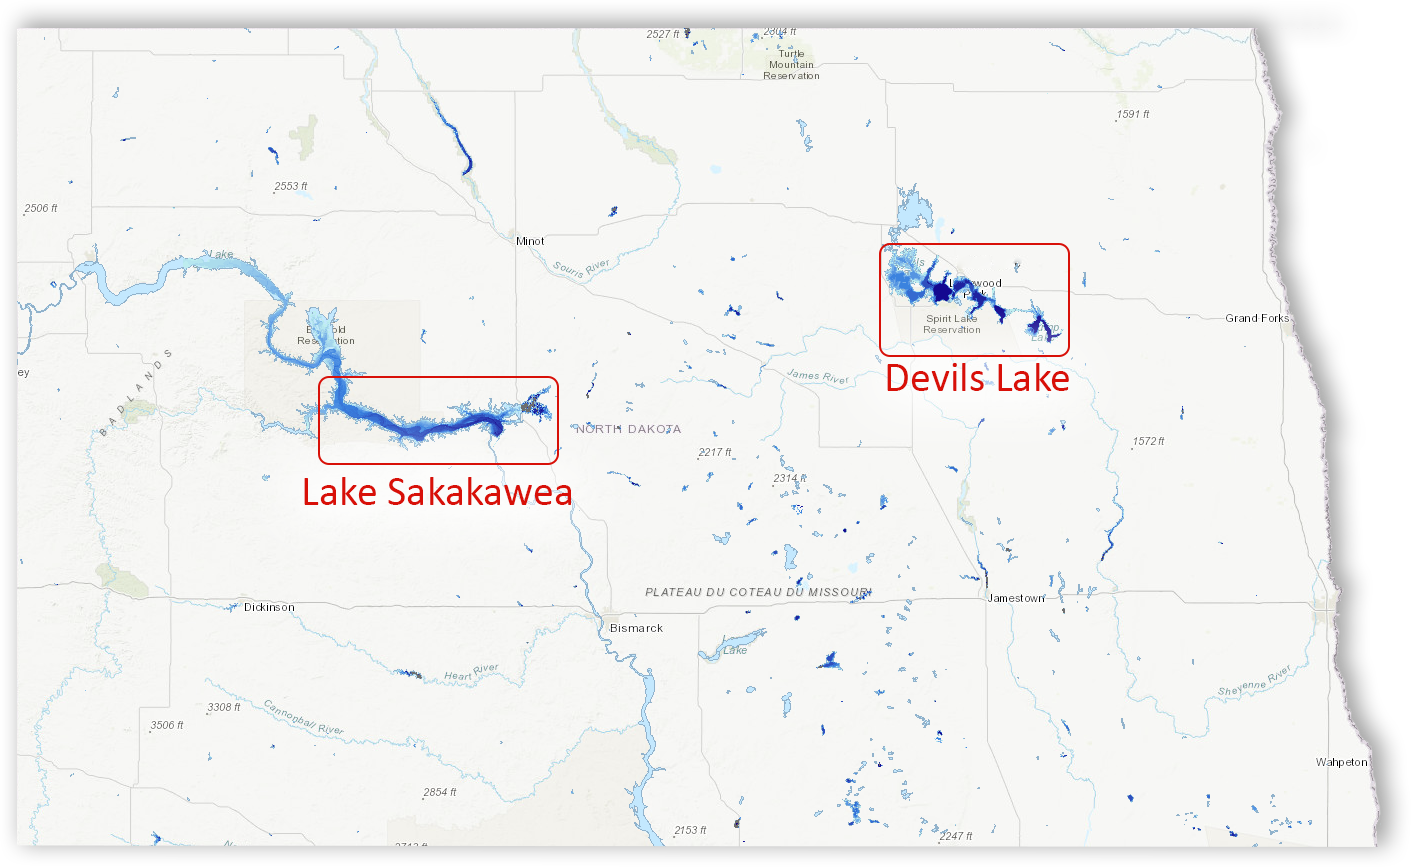 Map showing the two deep lakes in North Dakota, Lake Sakakawea and Devils Lake